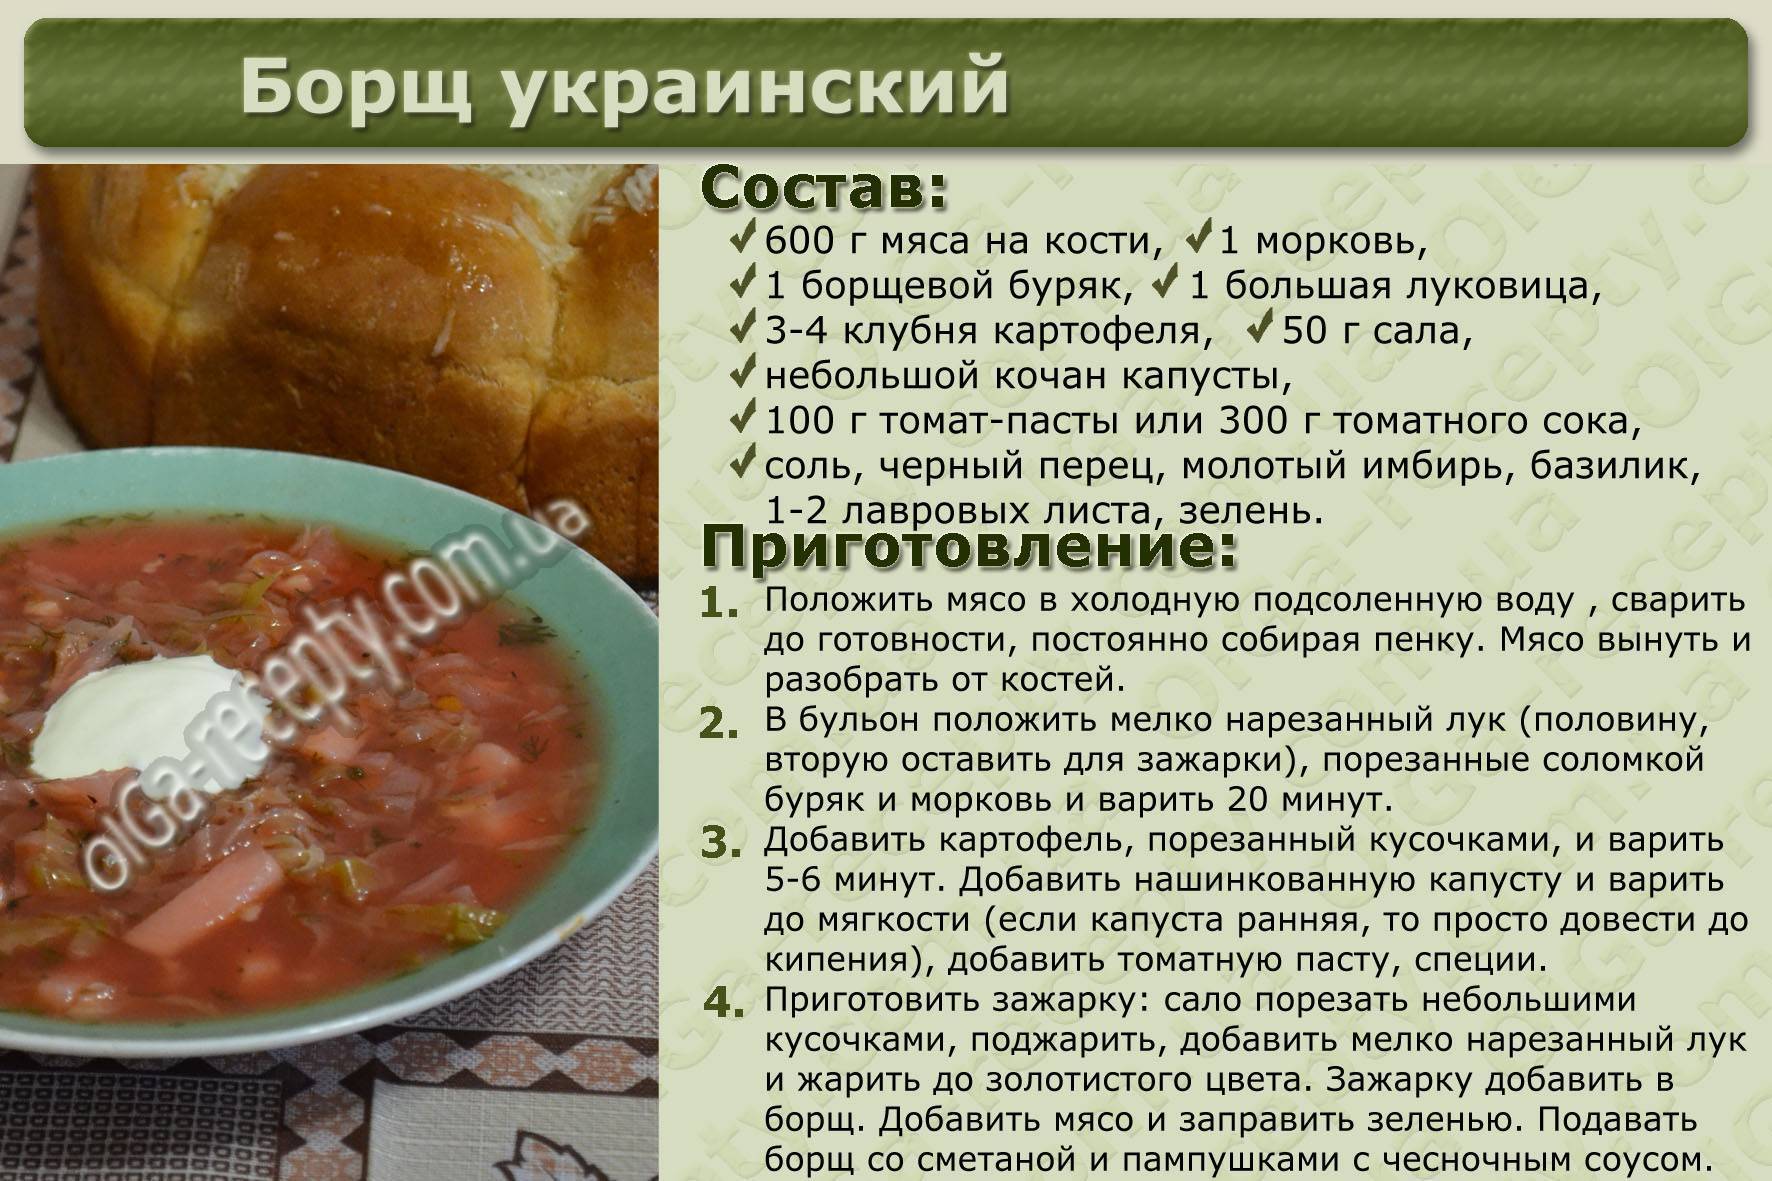 Заготовка супов и овощей на зиму: простые рецепты